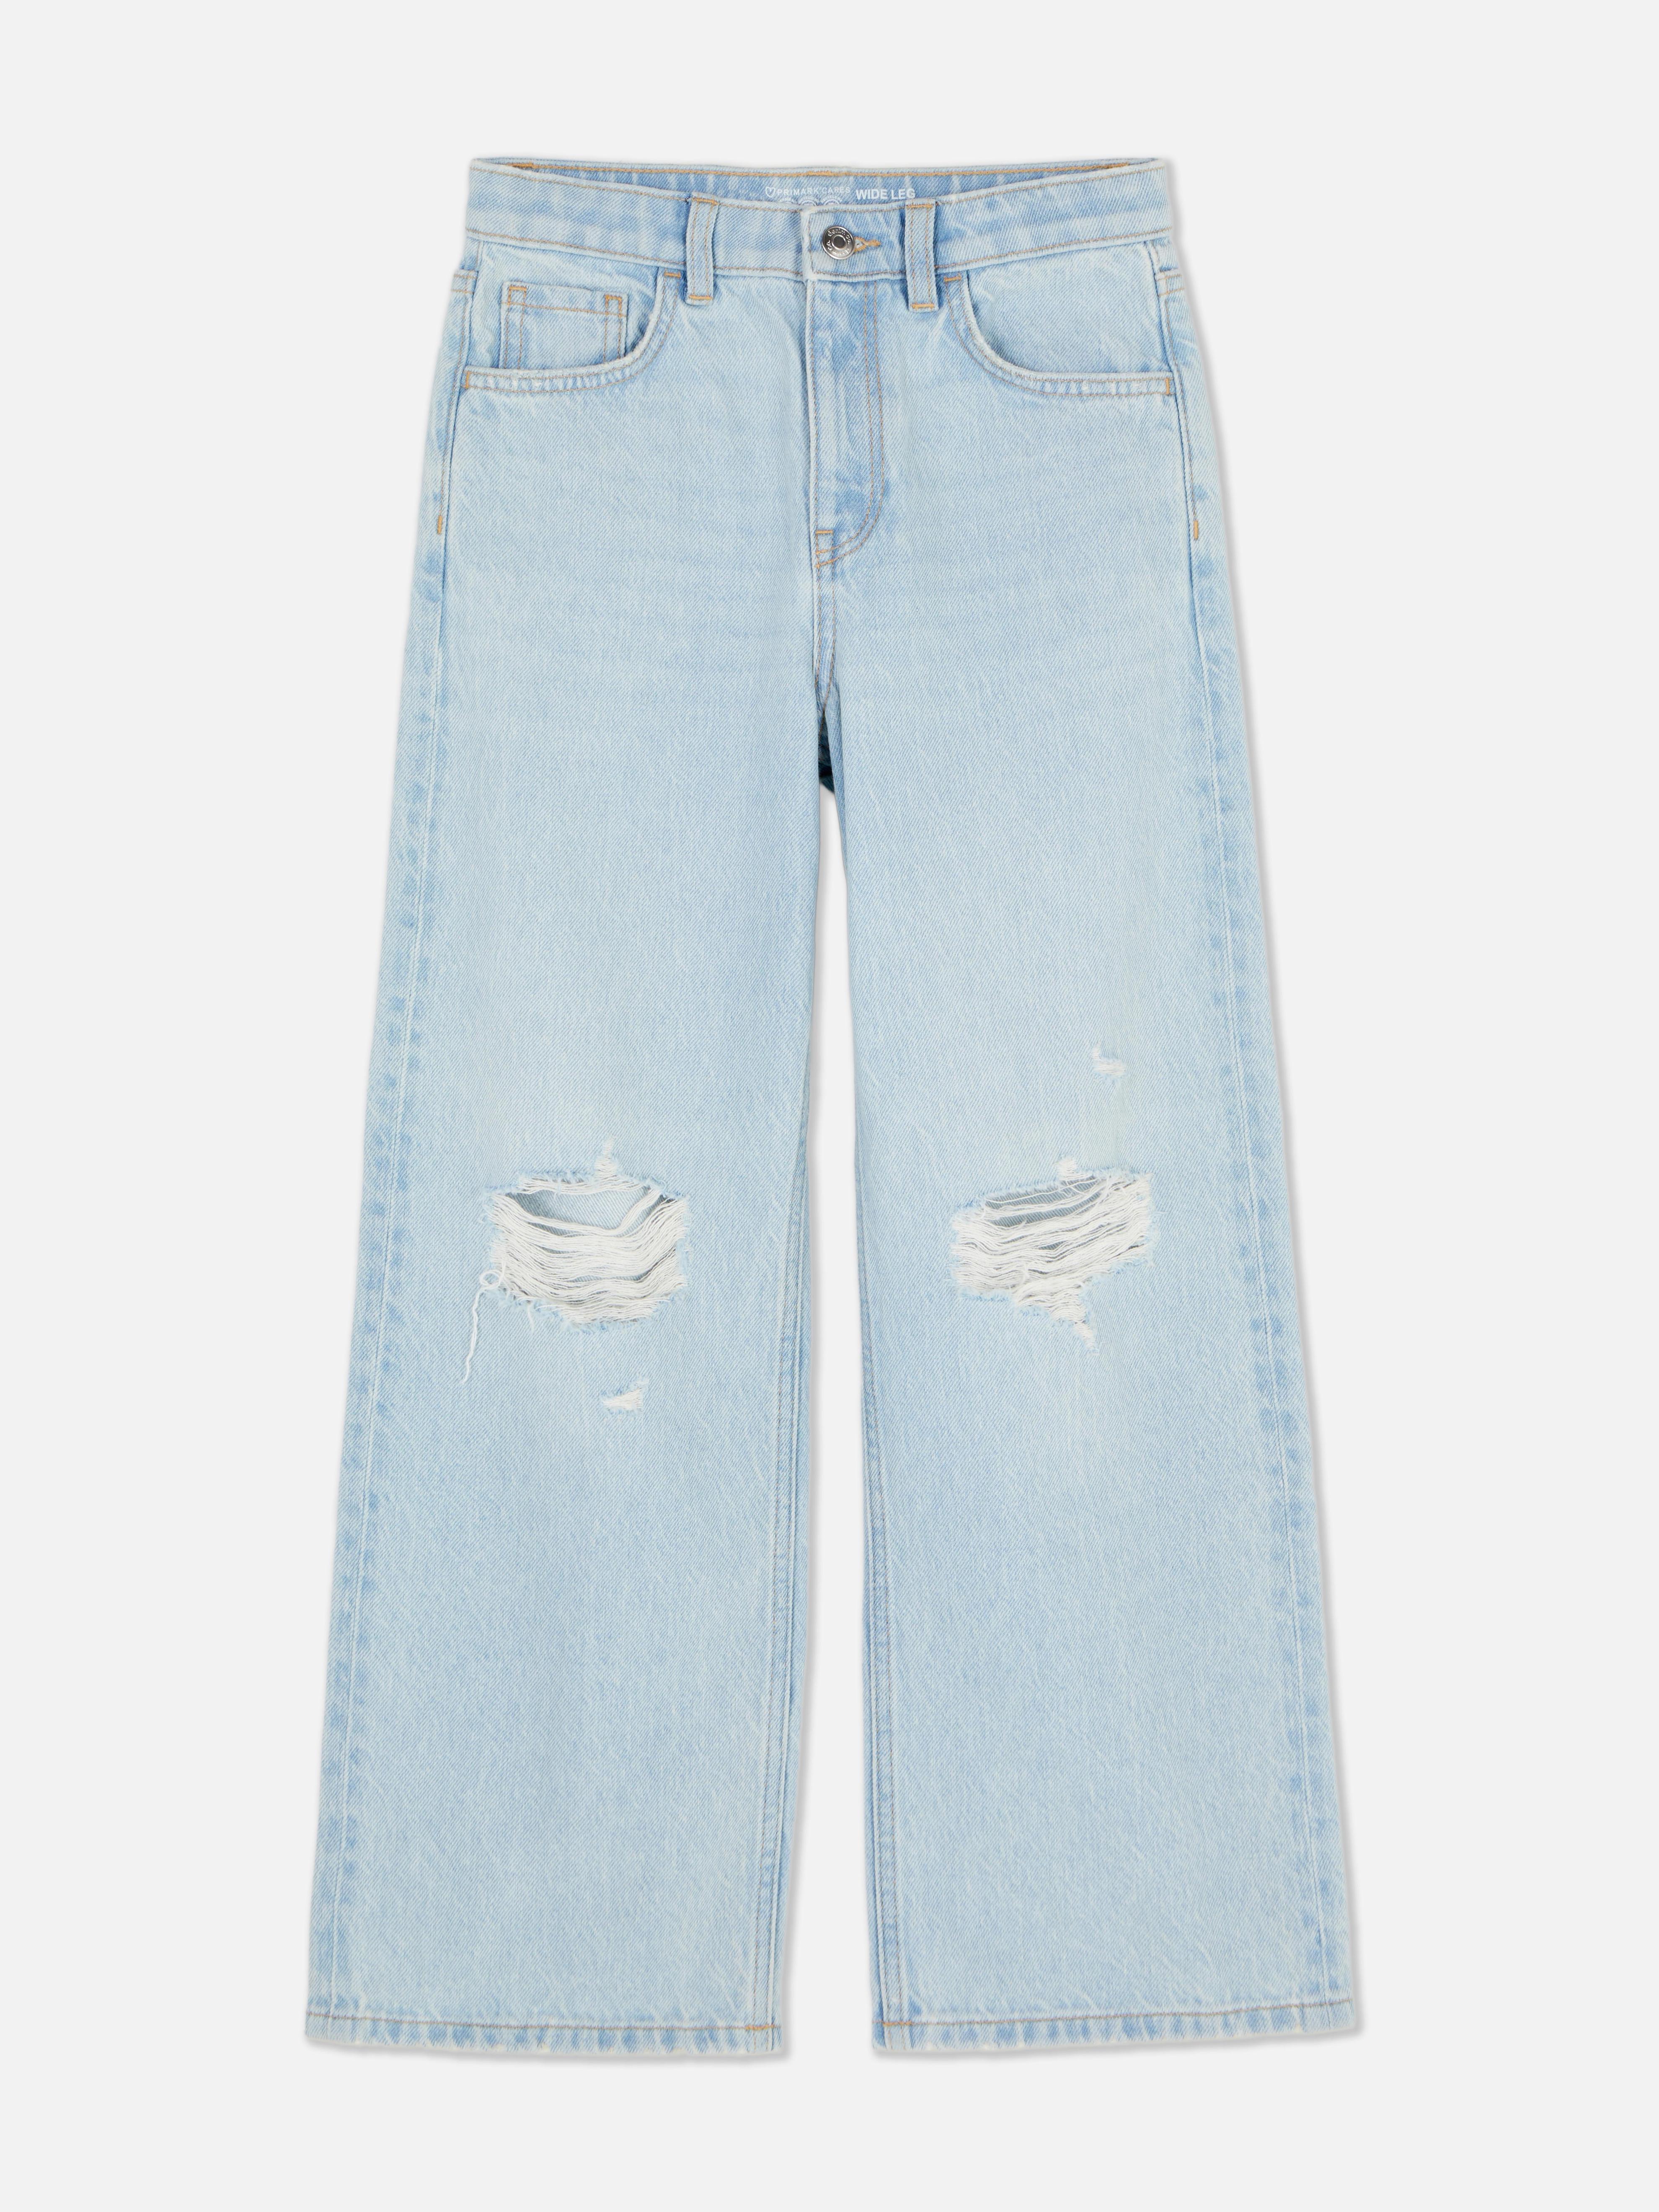 Zerrissene Denim-Jeans mit weitem Bein für 16€ in Primark